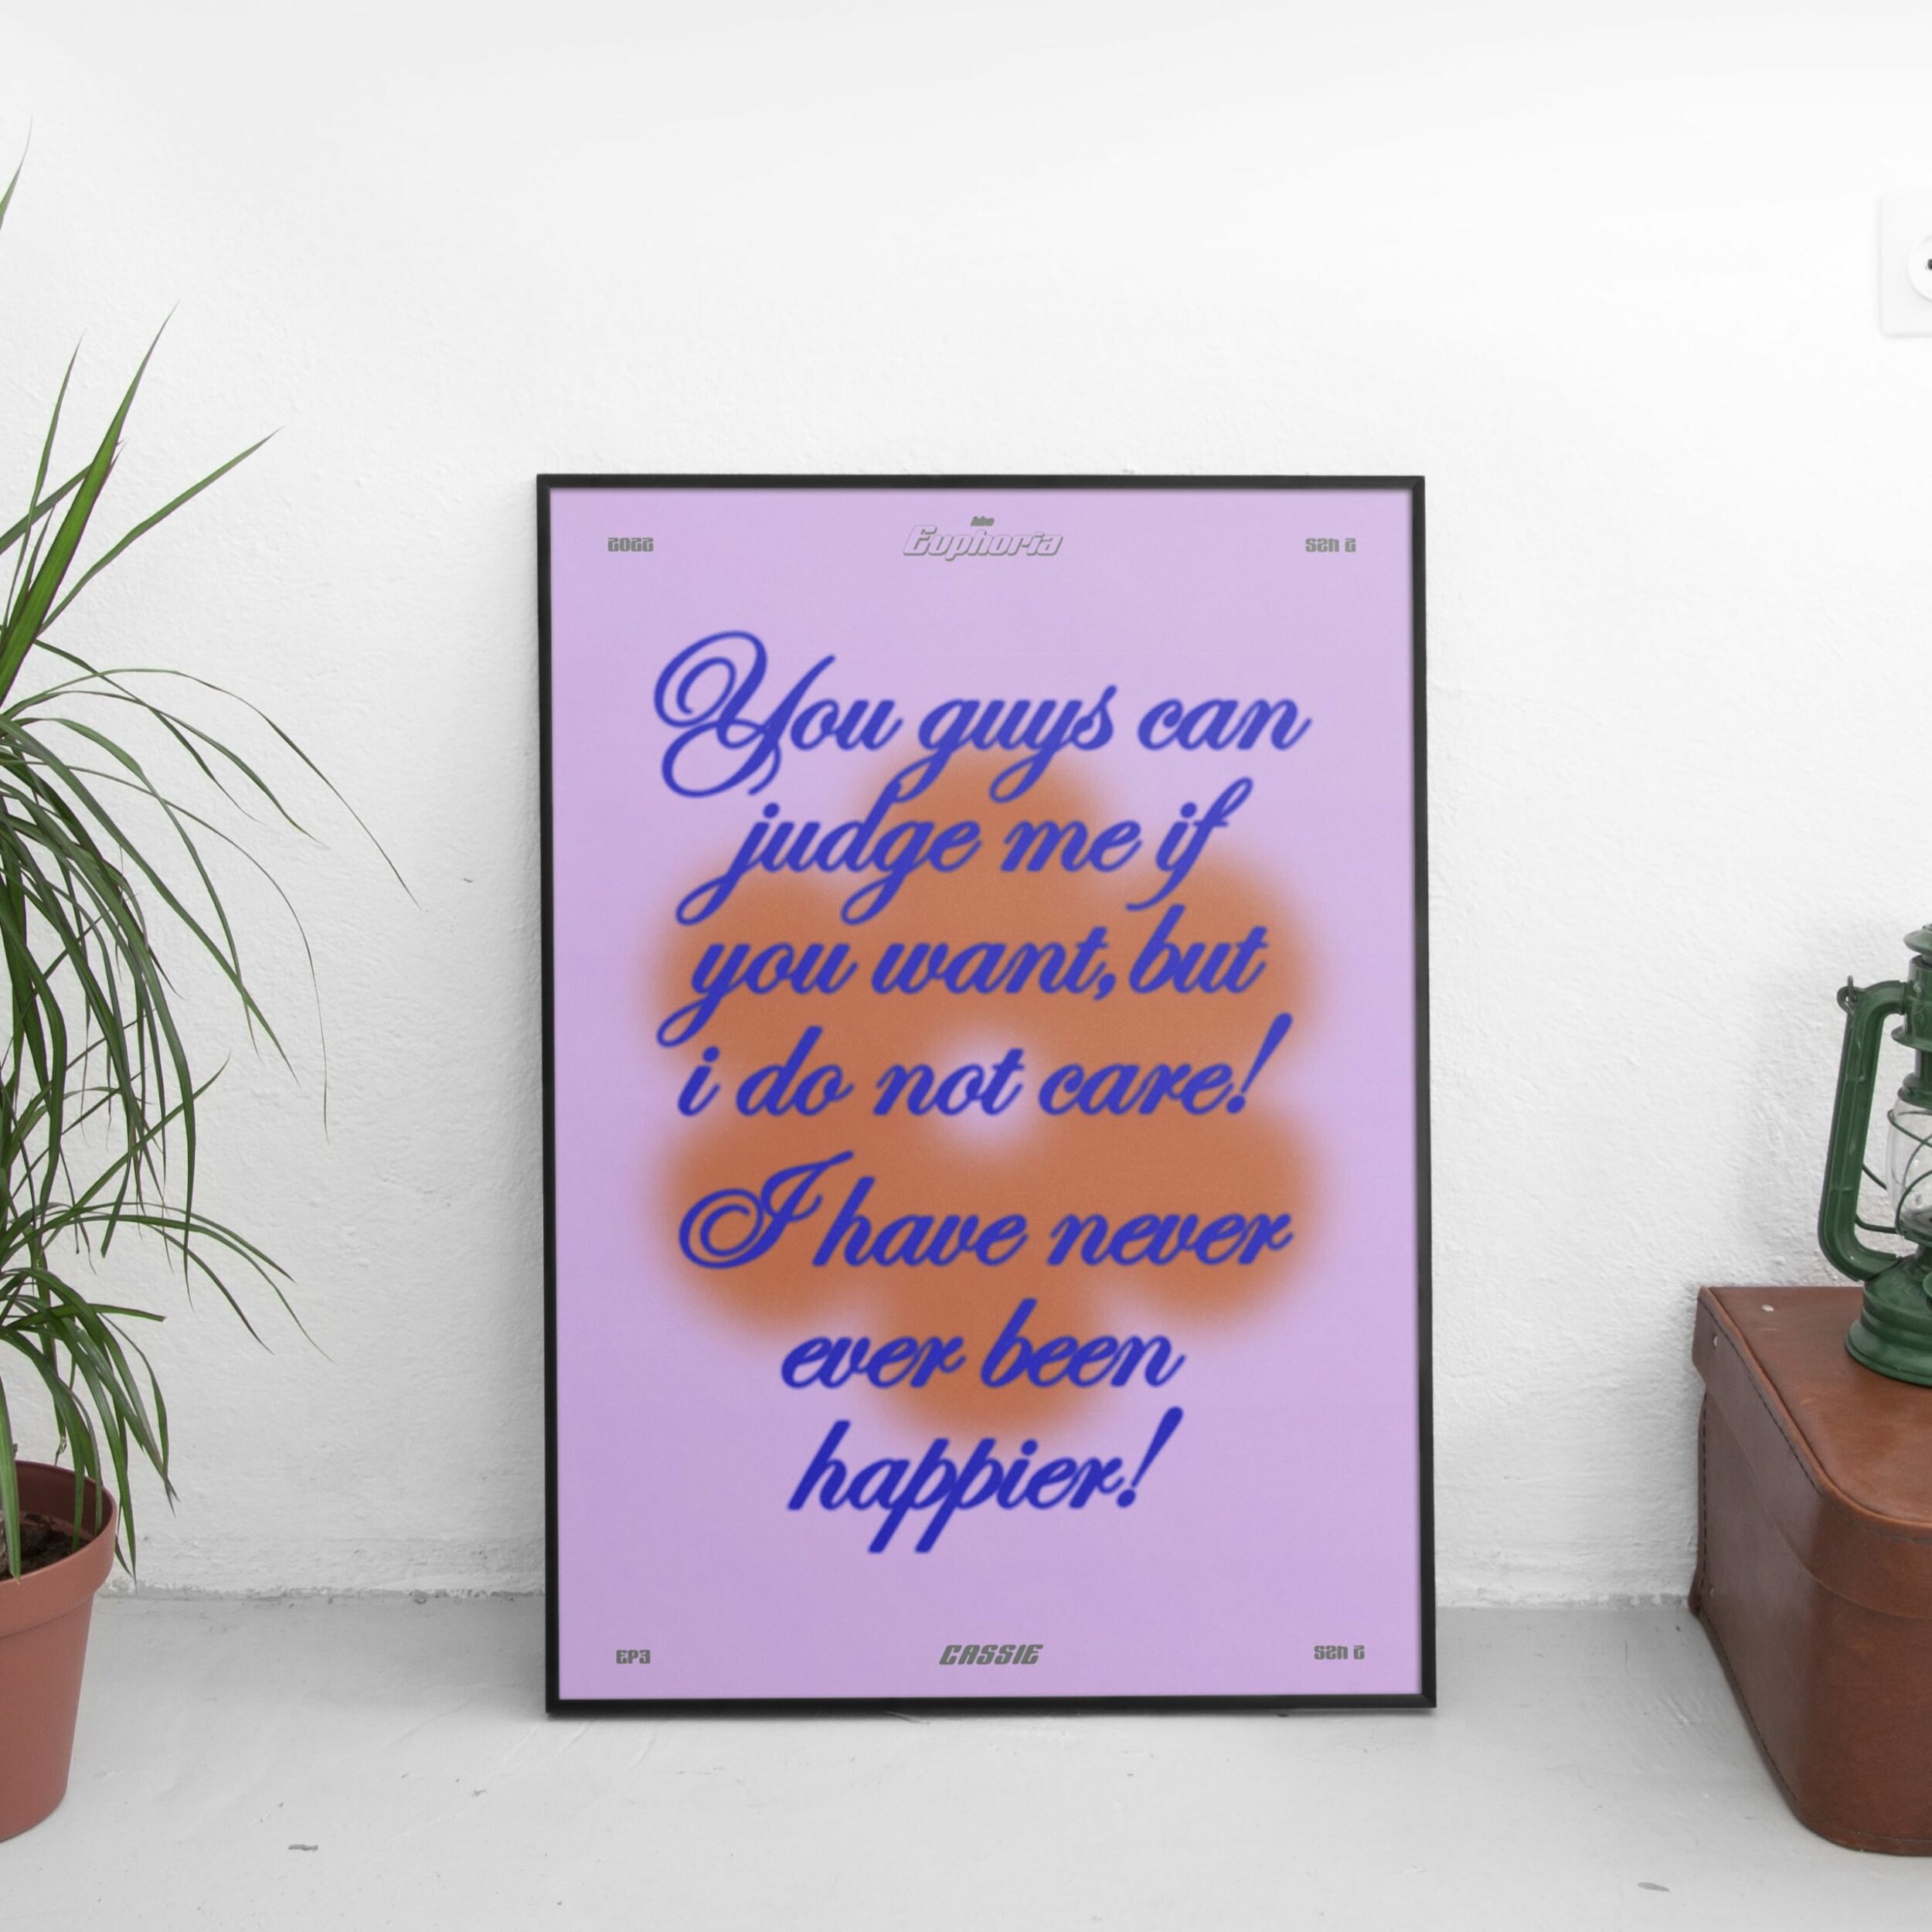 Never Been Happier - Cassie Quote (Euphoria) Poster